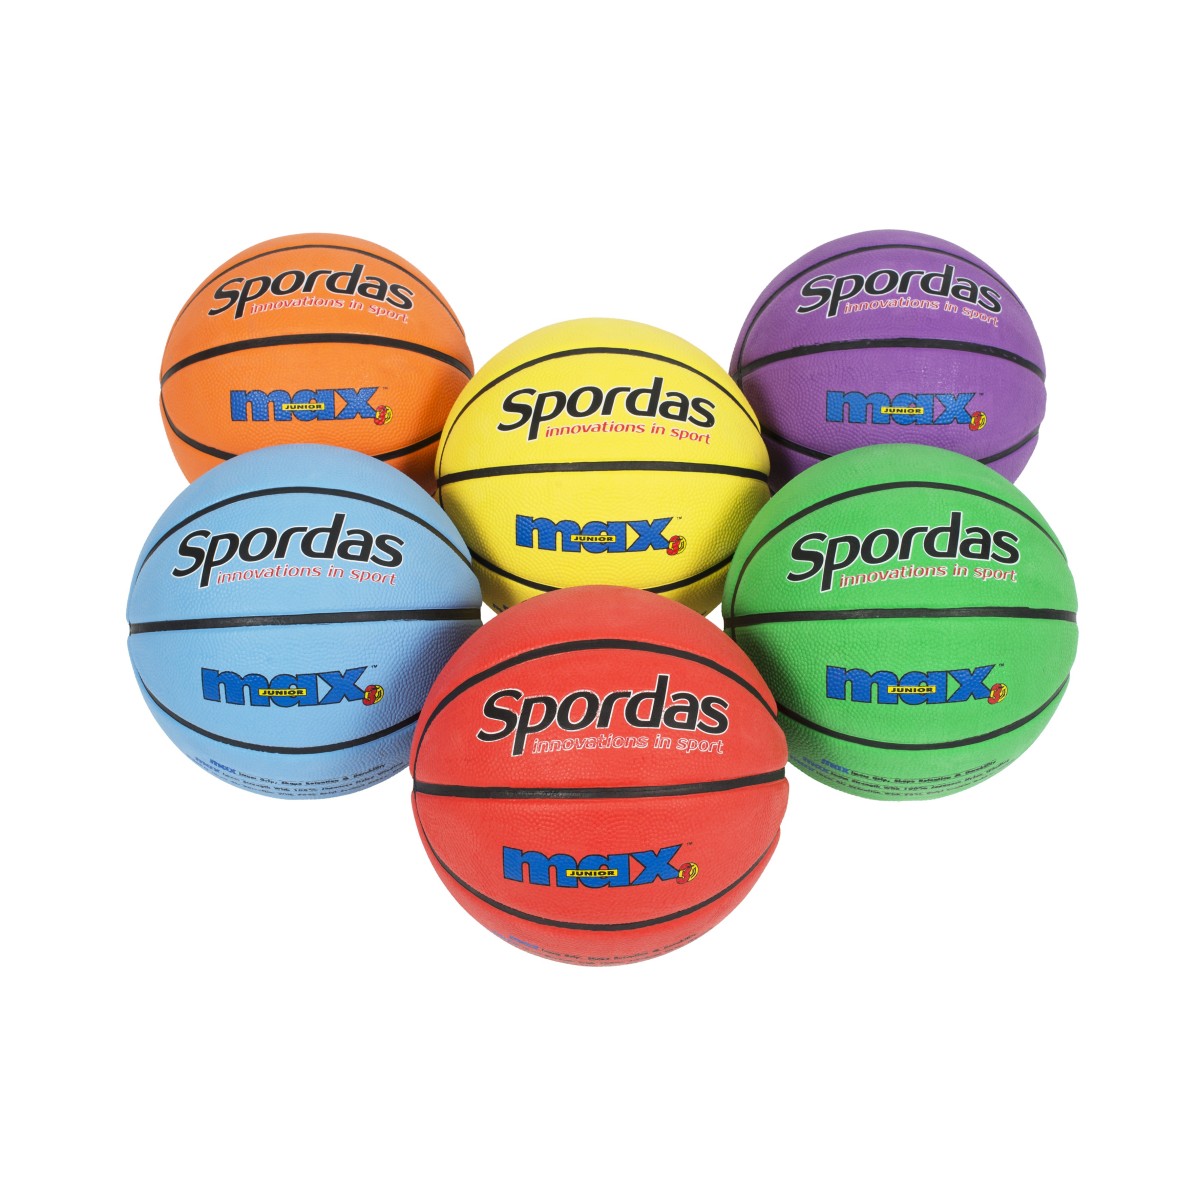 Lot de 6 ballons de basket-ball Spordas Max couleurs, pour jeux sportifs scolaires des enfants